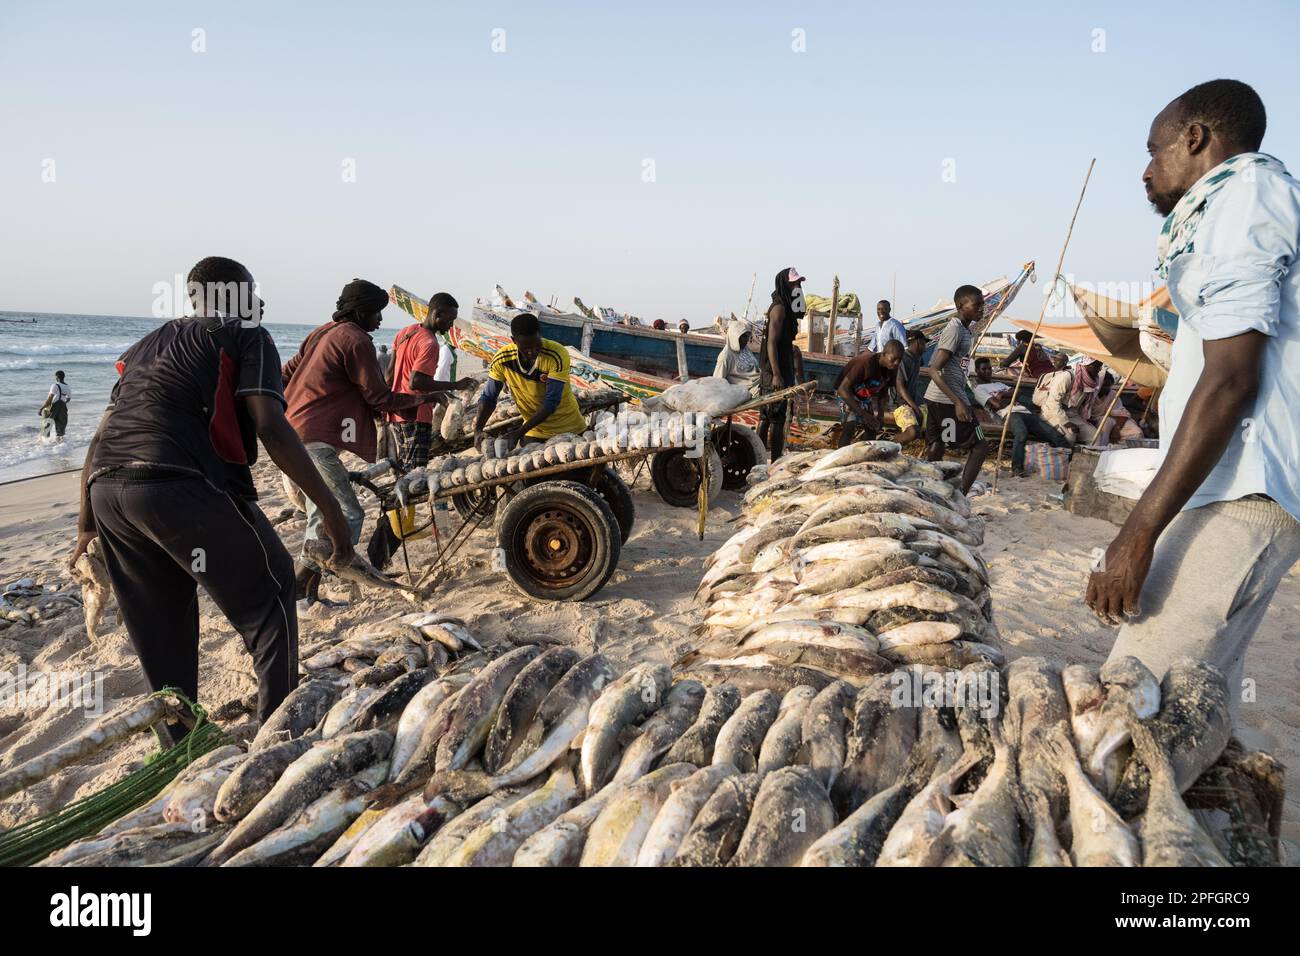 African fishermen unloading the day's catch of fish. Port de Peche, Nouakchott's famous fish market, plage des pecheurs. Mauritania. Stock Photo